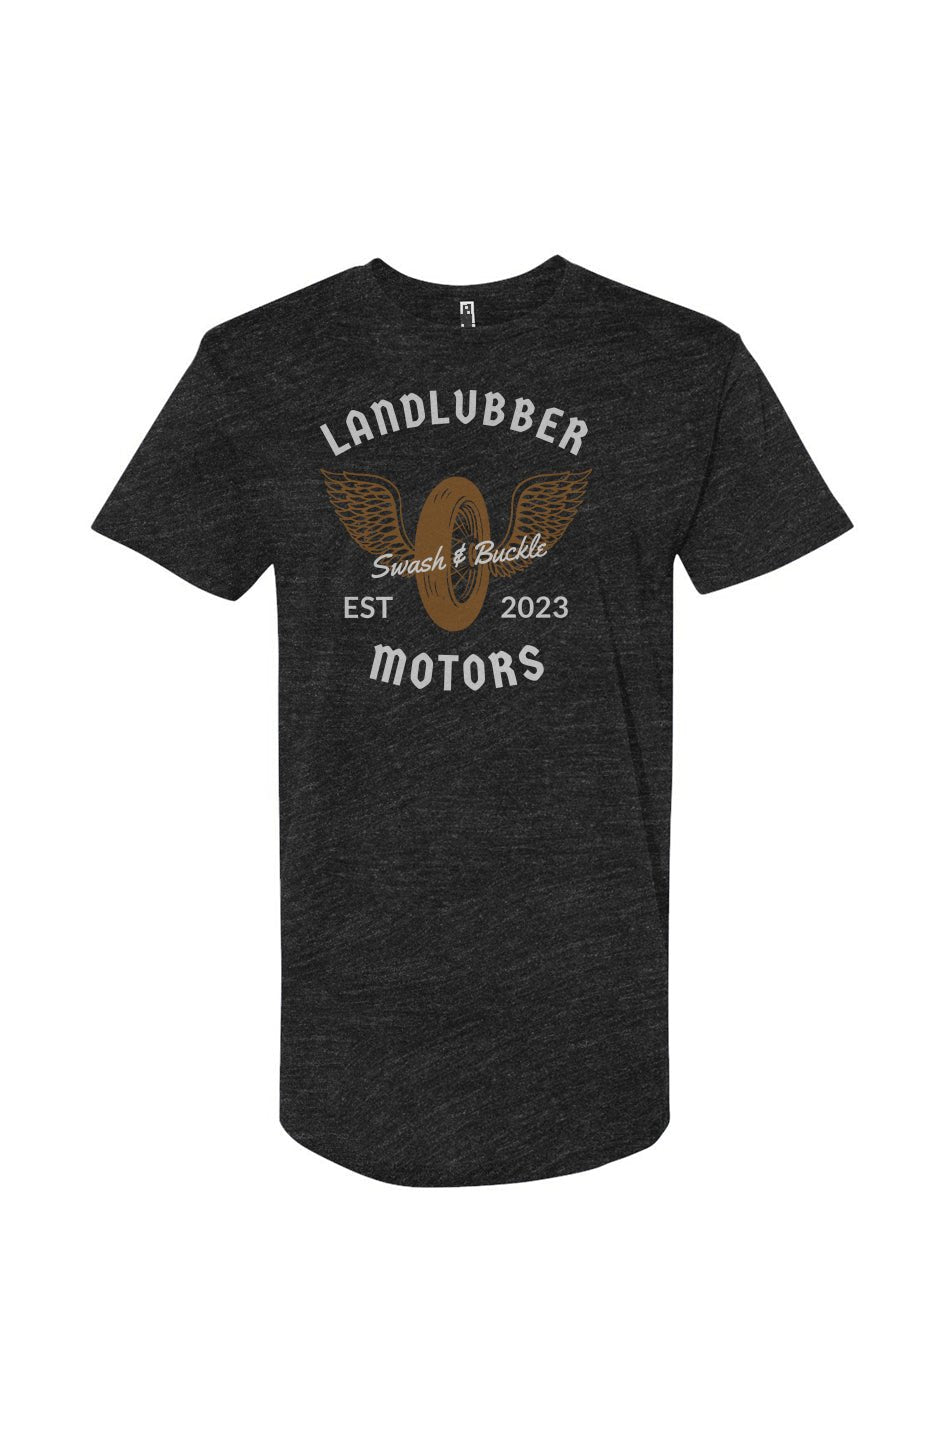 Landlubber Tall T-Shirt